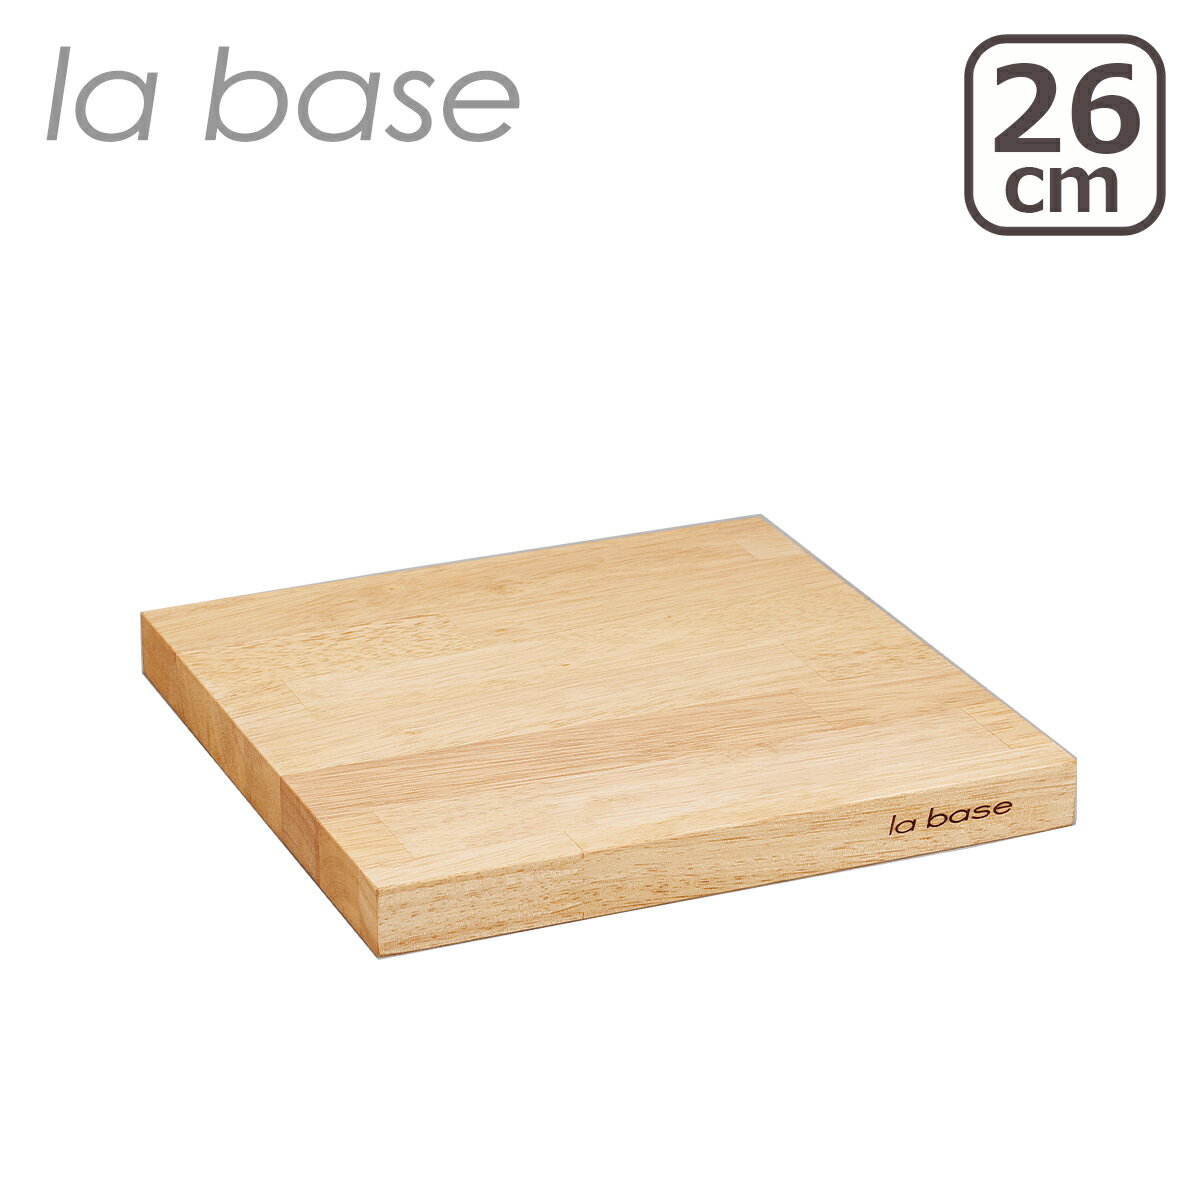 ラバーゼ まな板・カッティングボード ラバーゼ la base まな板 26cm LB-009 日本製 ゴムの木 木製カッティングボード